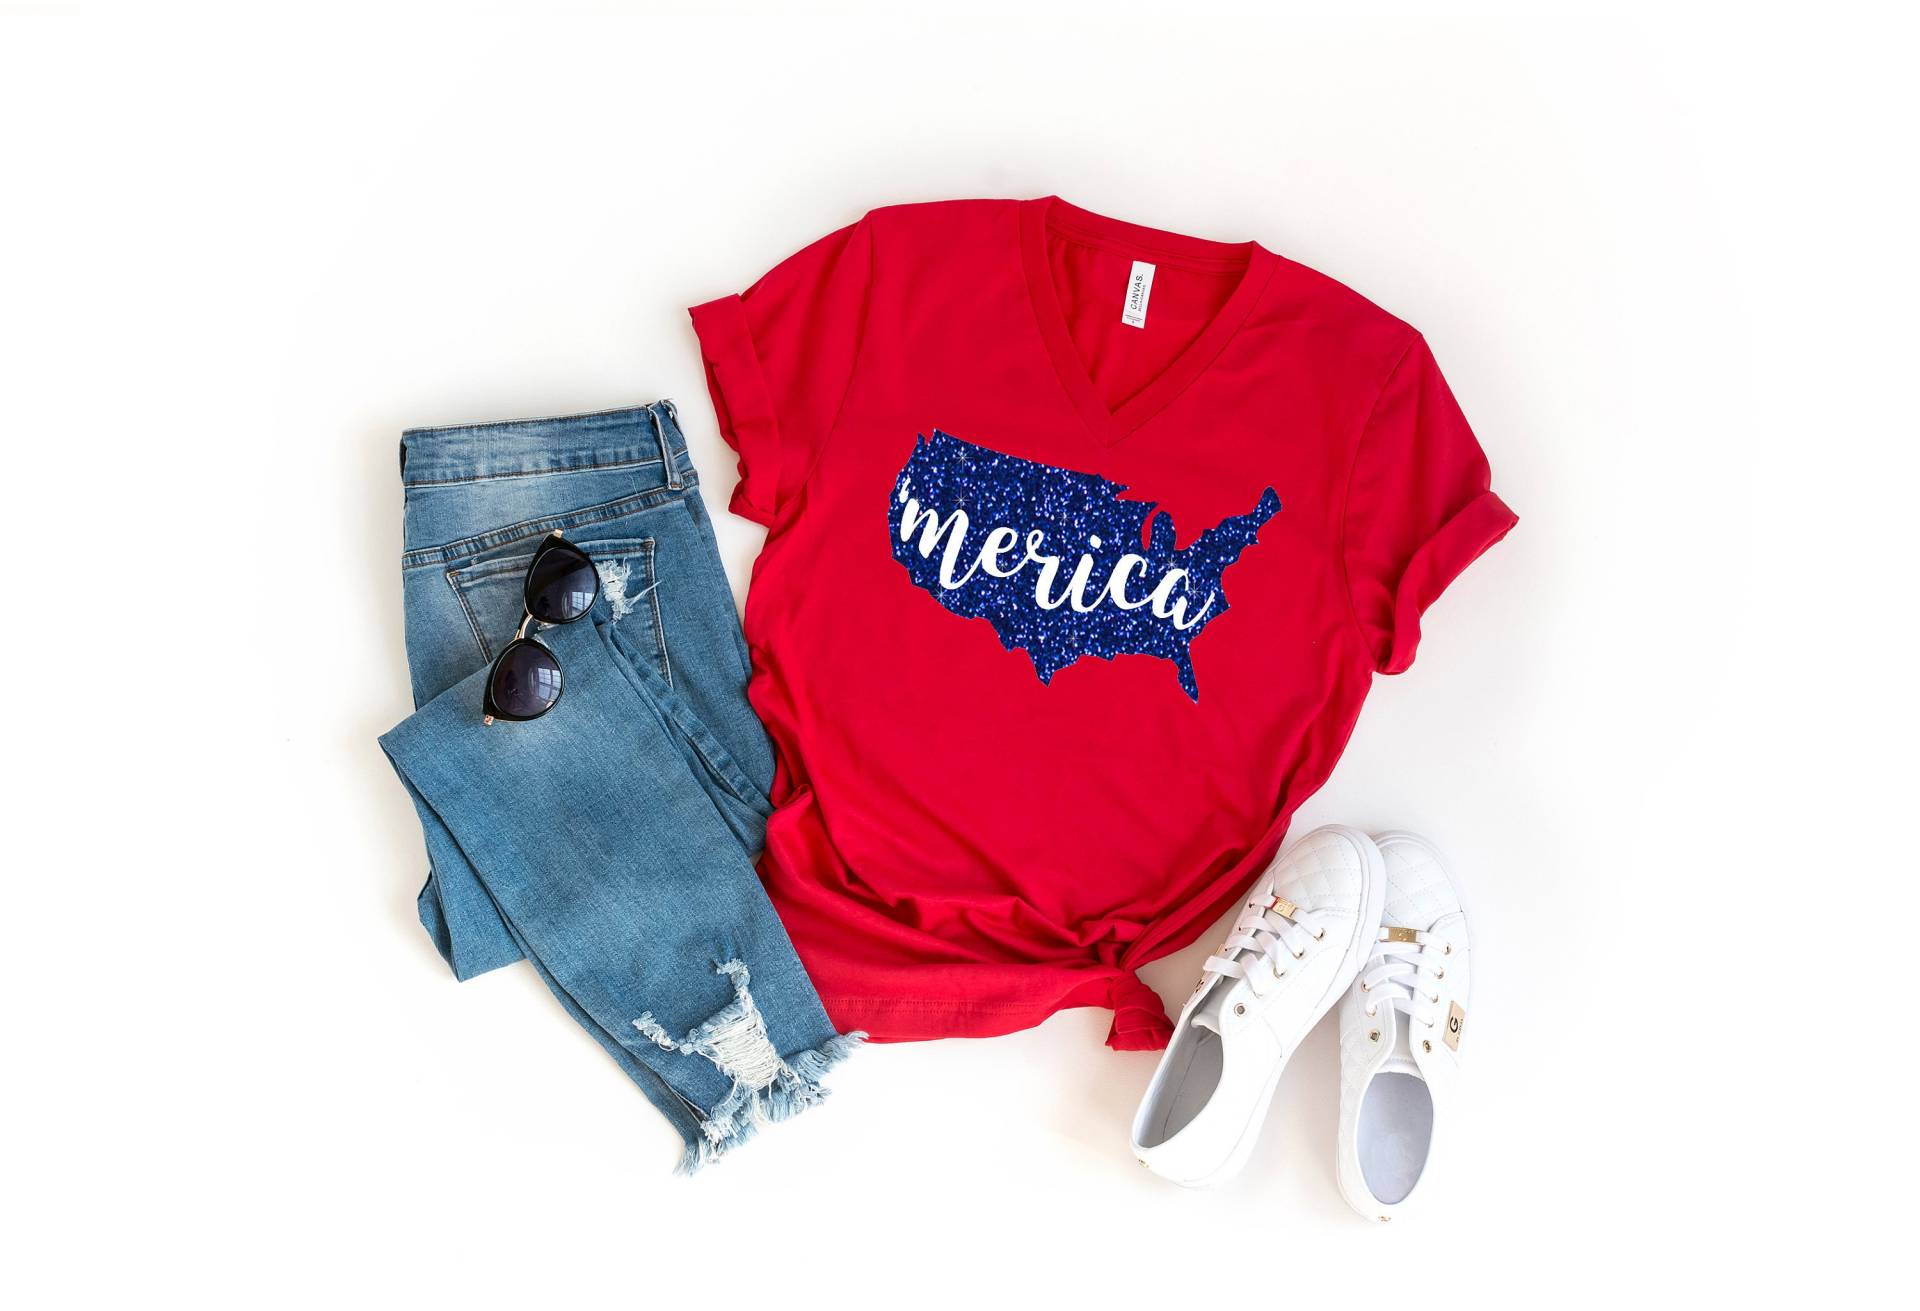 Merica Shirt, 4. Juli Juli, Staaten Brille Unisex Frauen von GirliesGalore